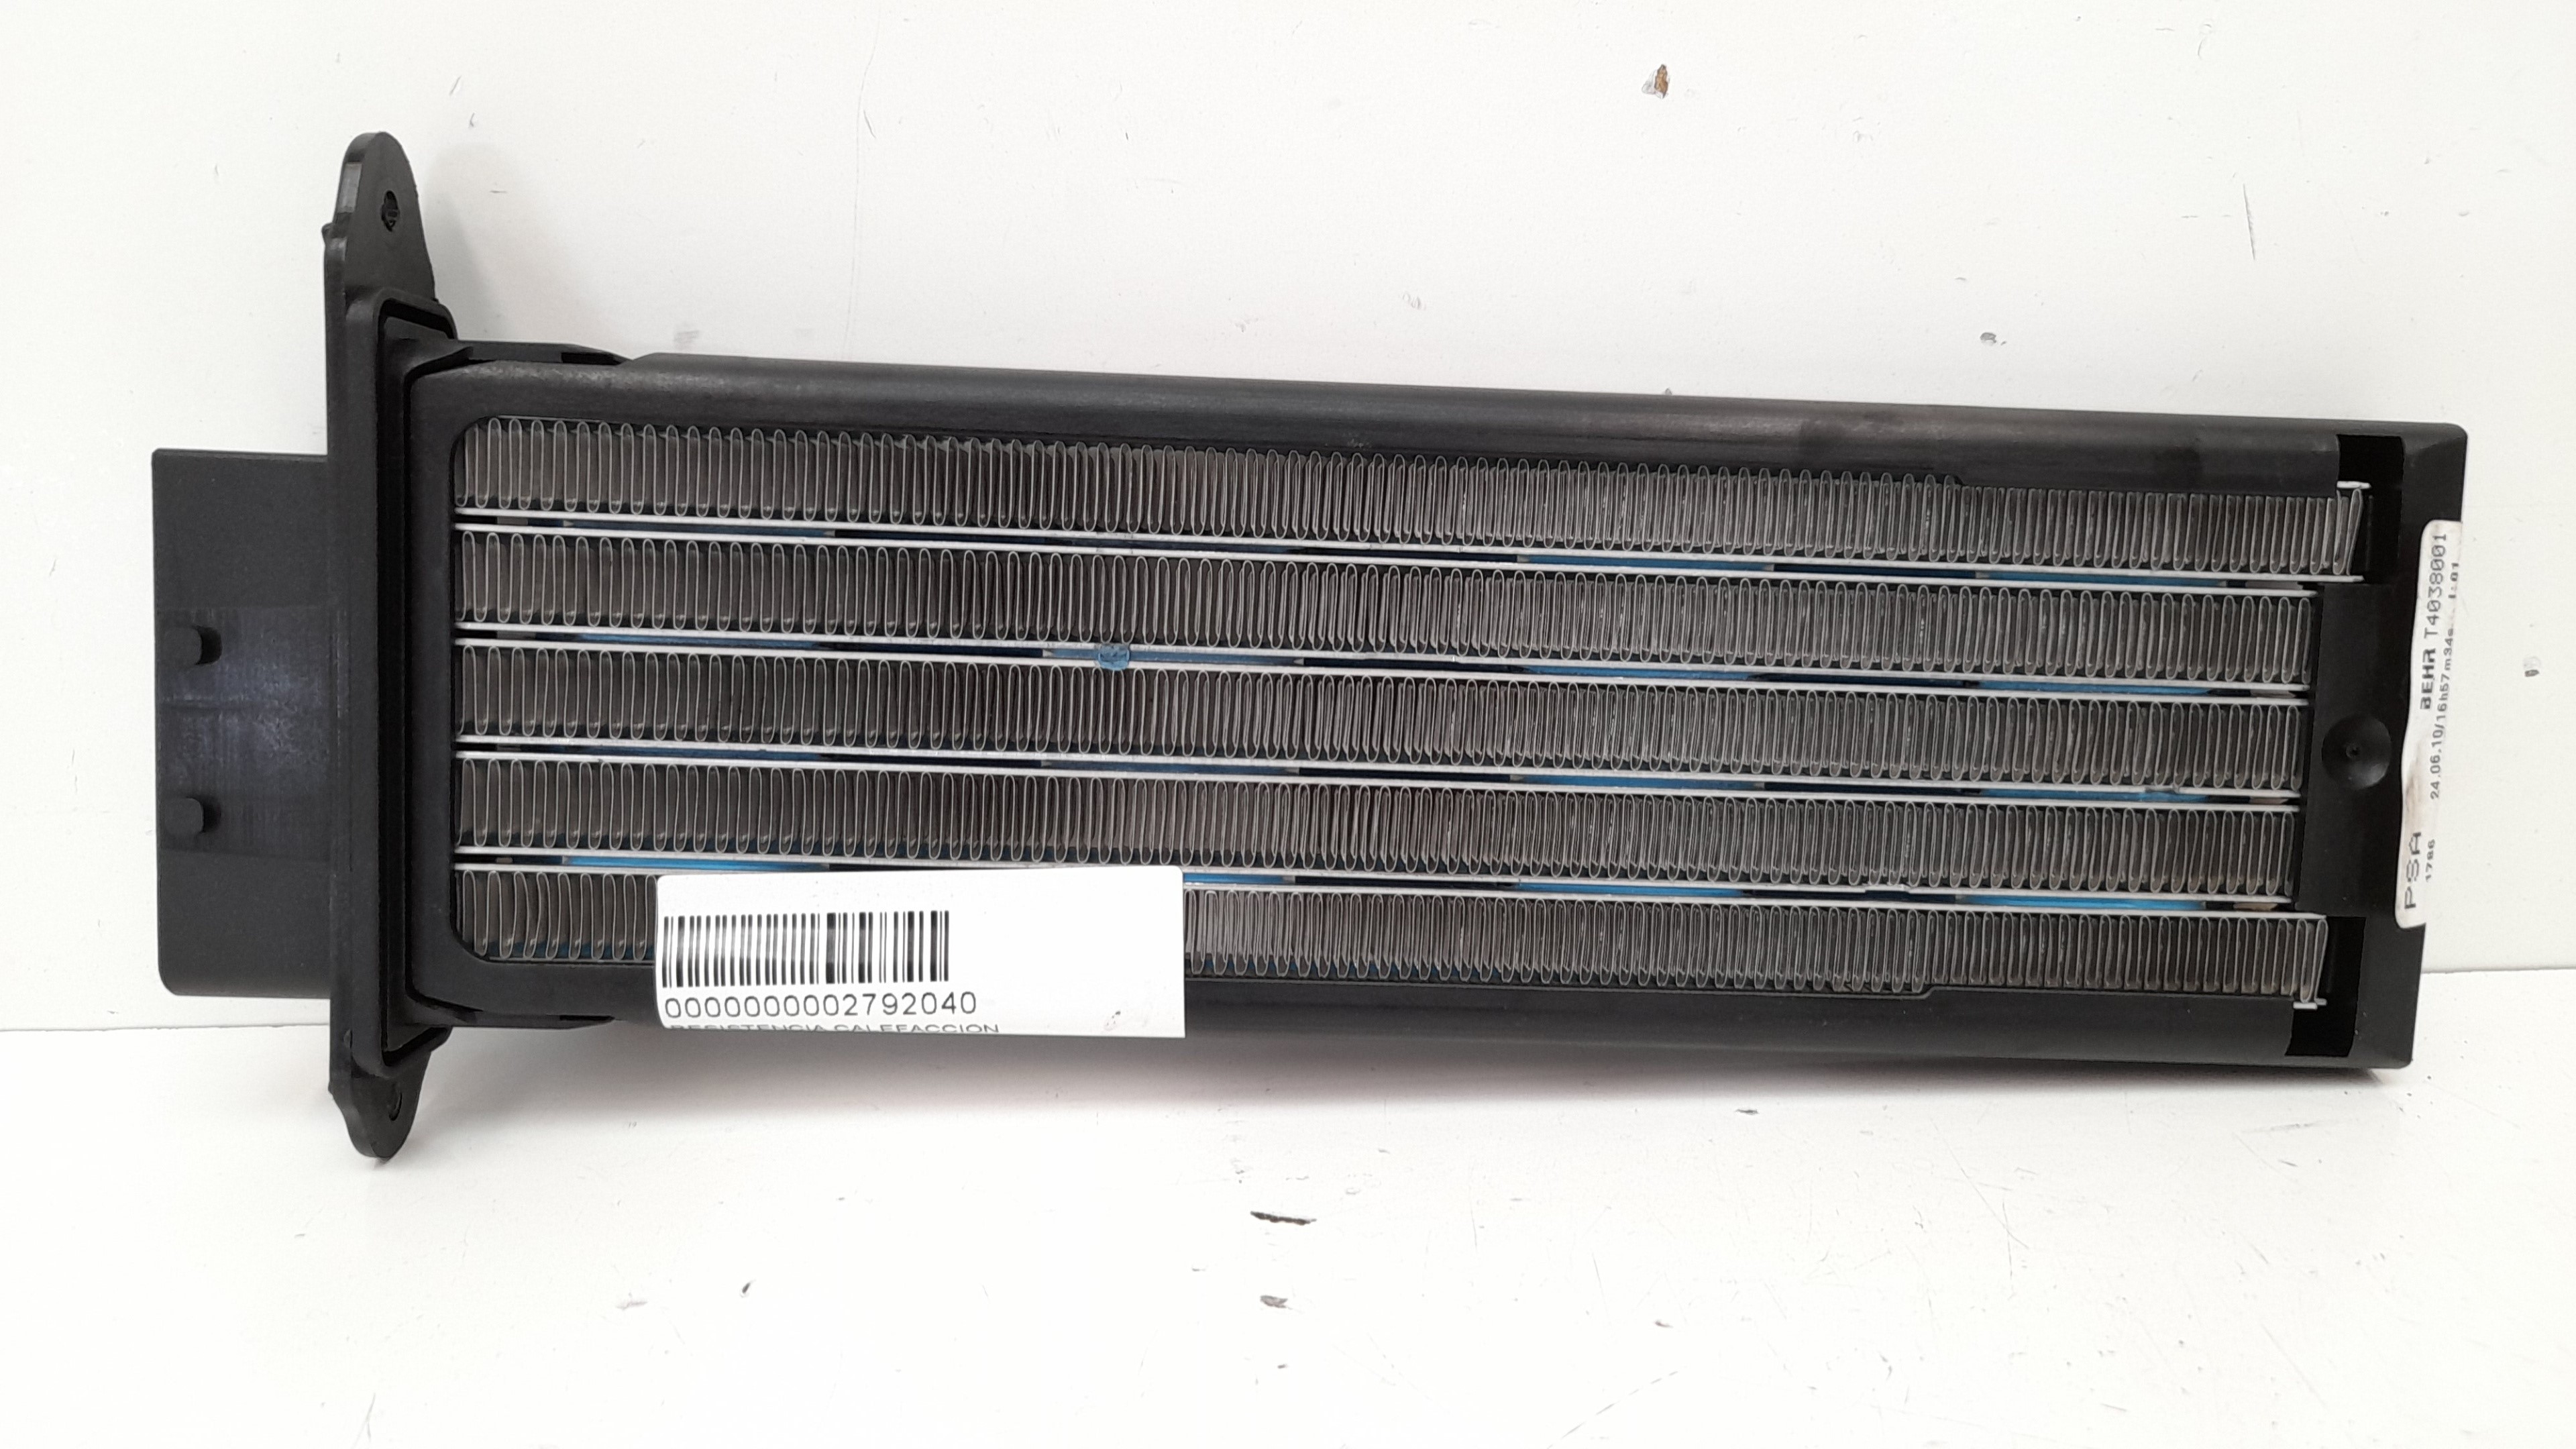 CITROËN Megane 3 generation (2008-2020) Interior Heater Resistor T4038001, PSA1786 22034820